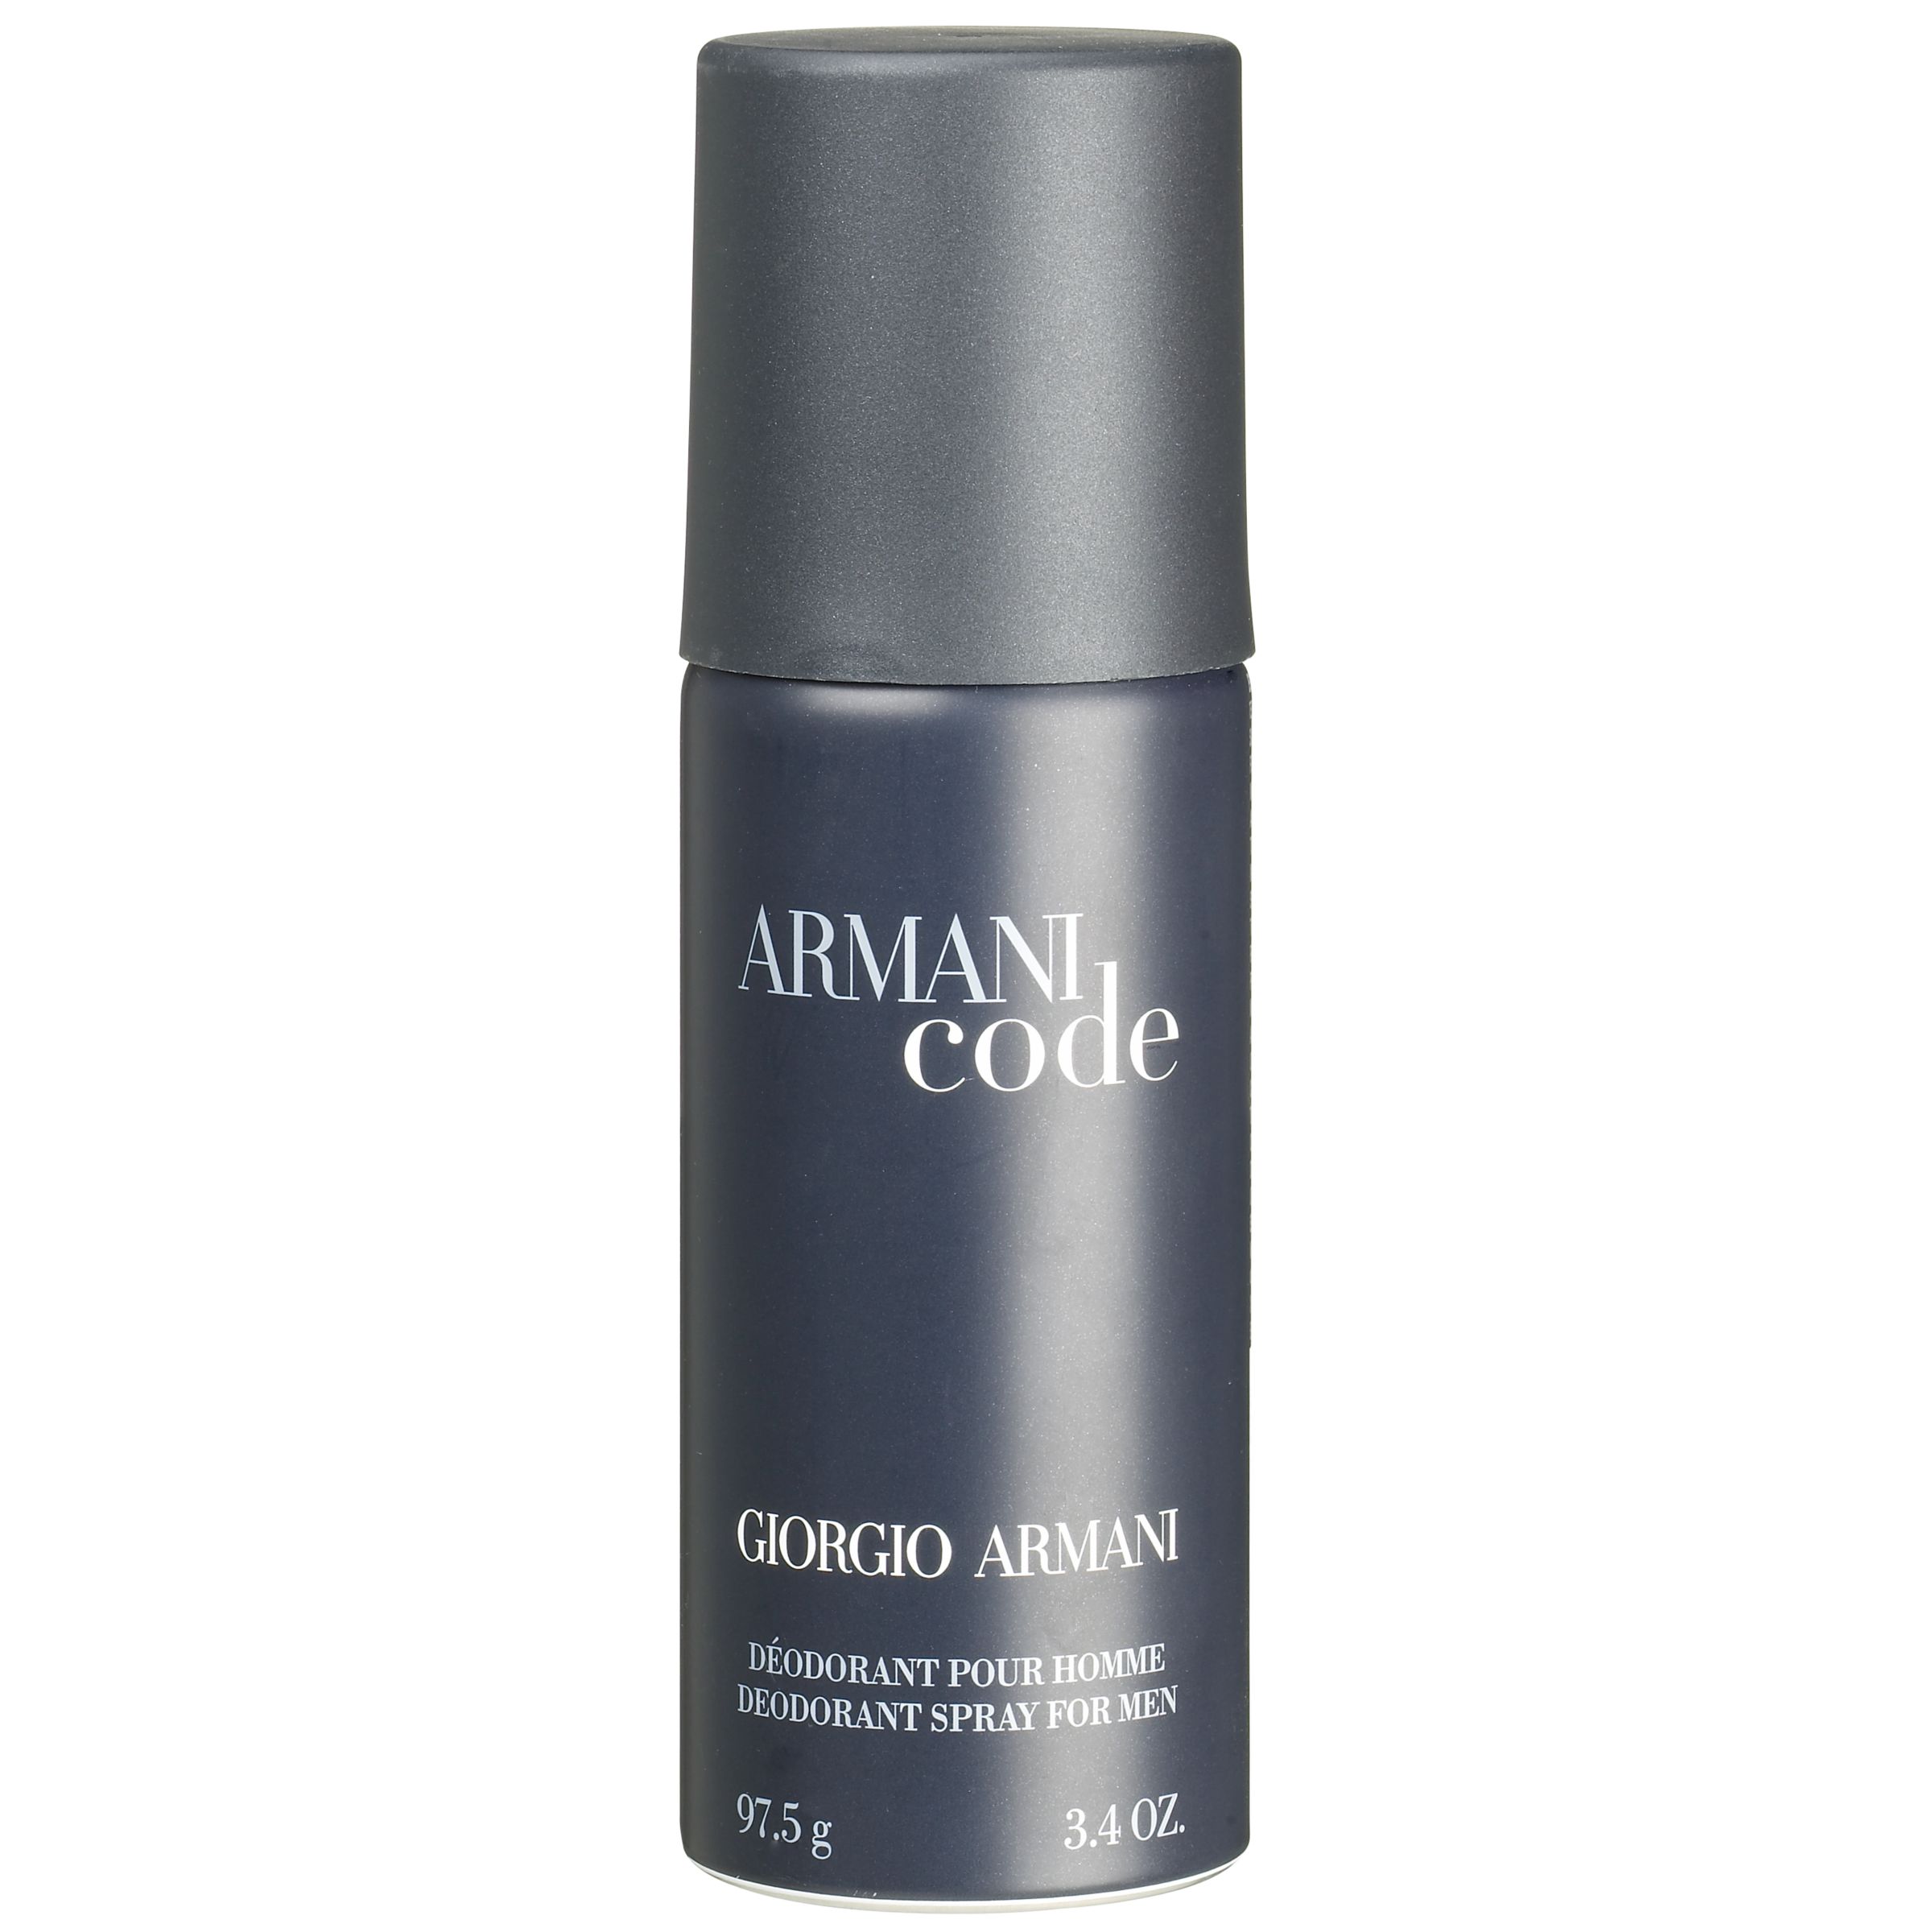 armani code deodorant review